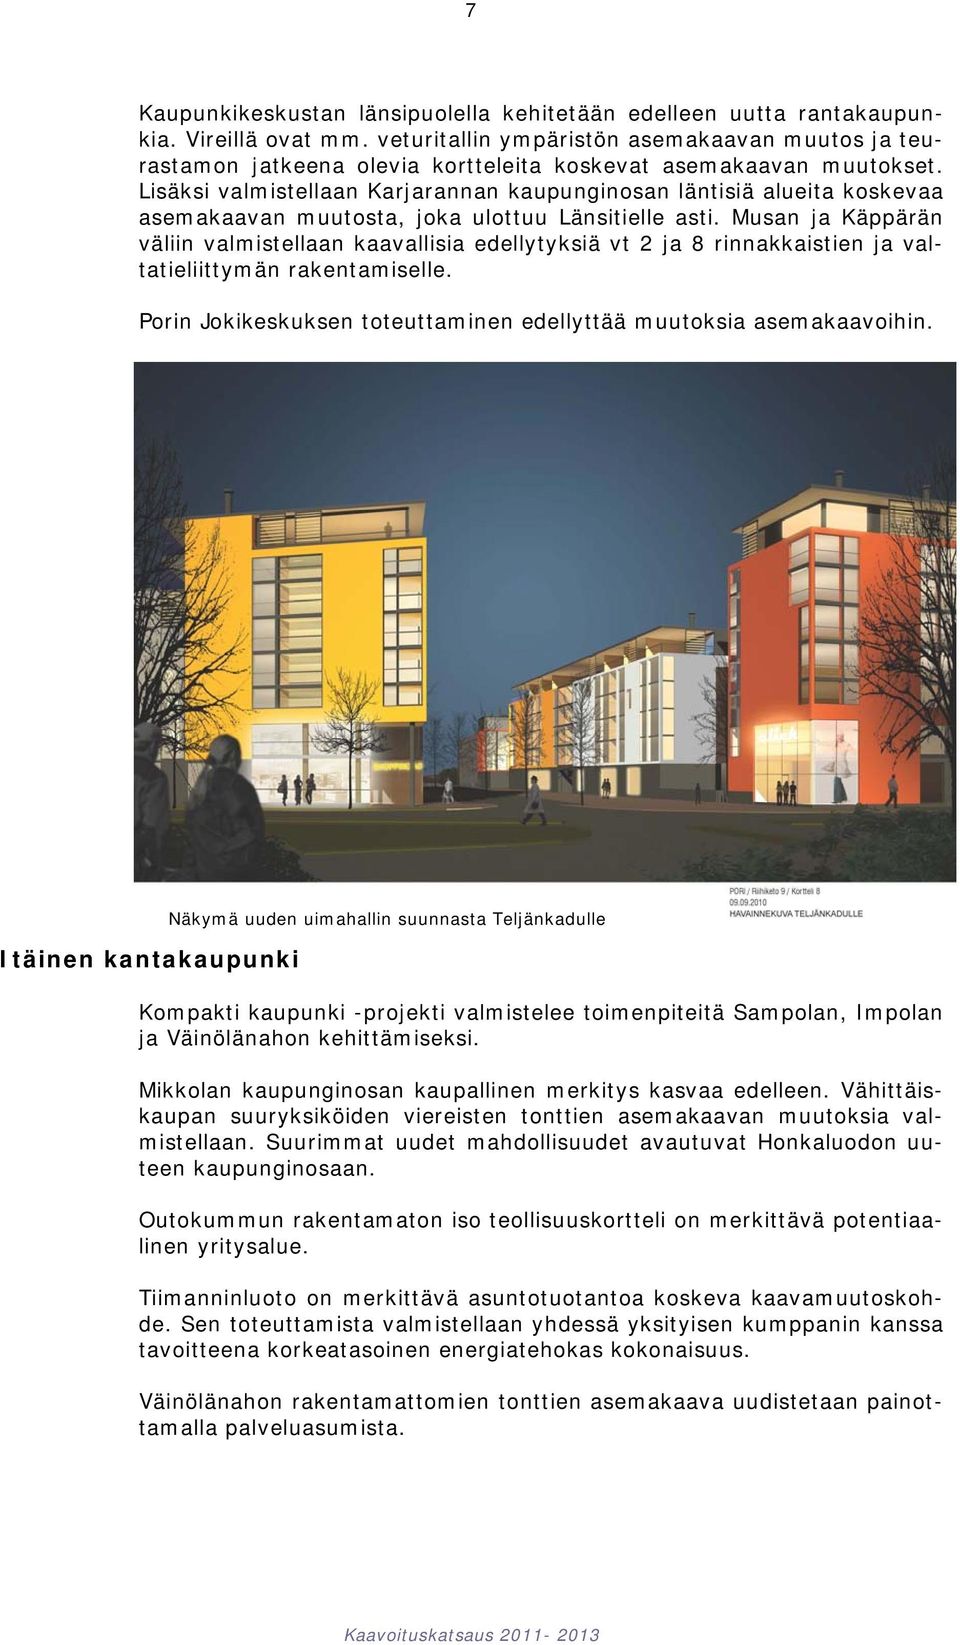 Lisäksi valmistellaan Karjarannan kaupunginosan läntisiä alueita koskevaa asemakaavan muutosta, joka ulottuu Länsitielle asti.